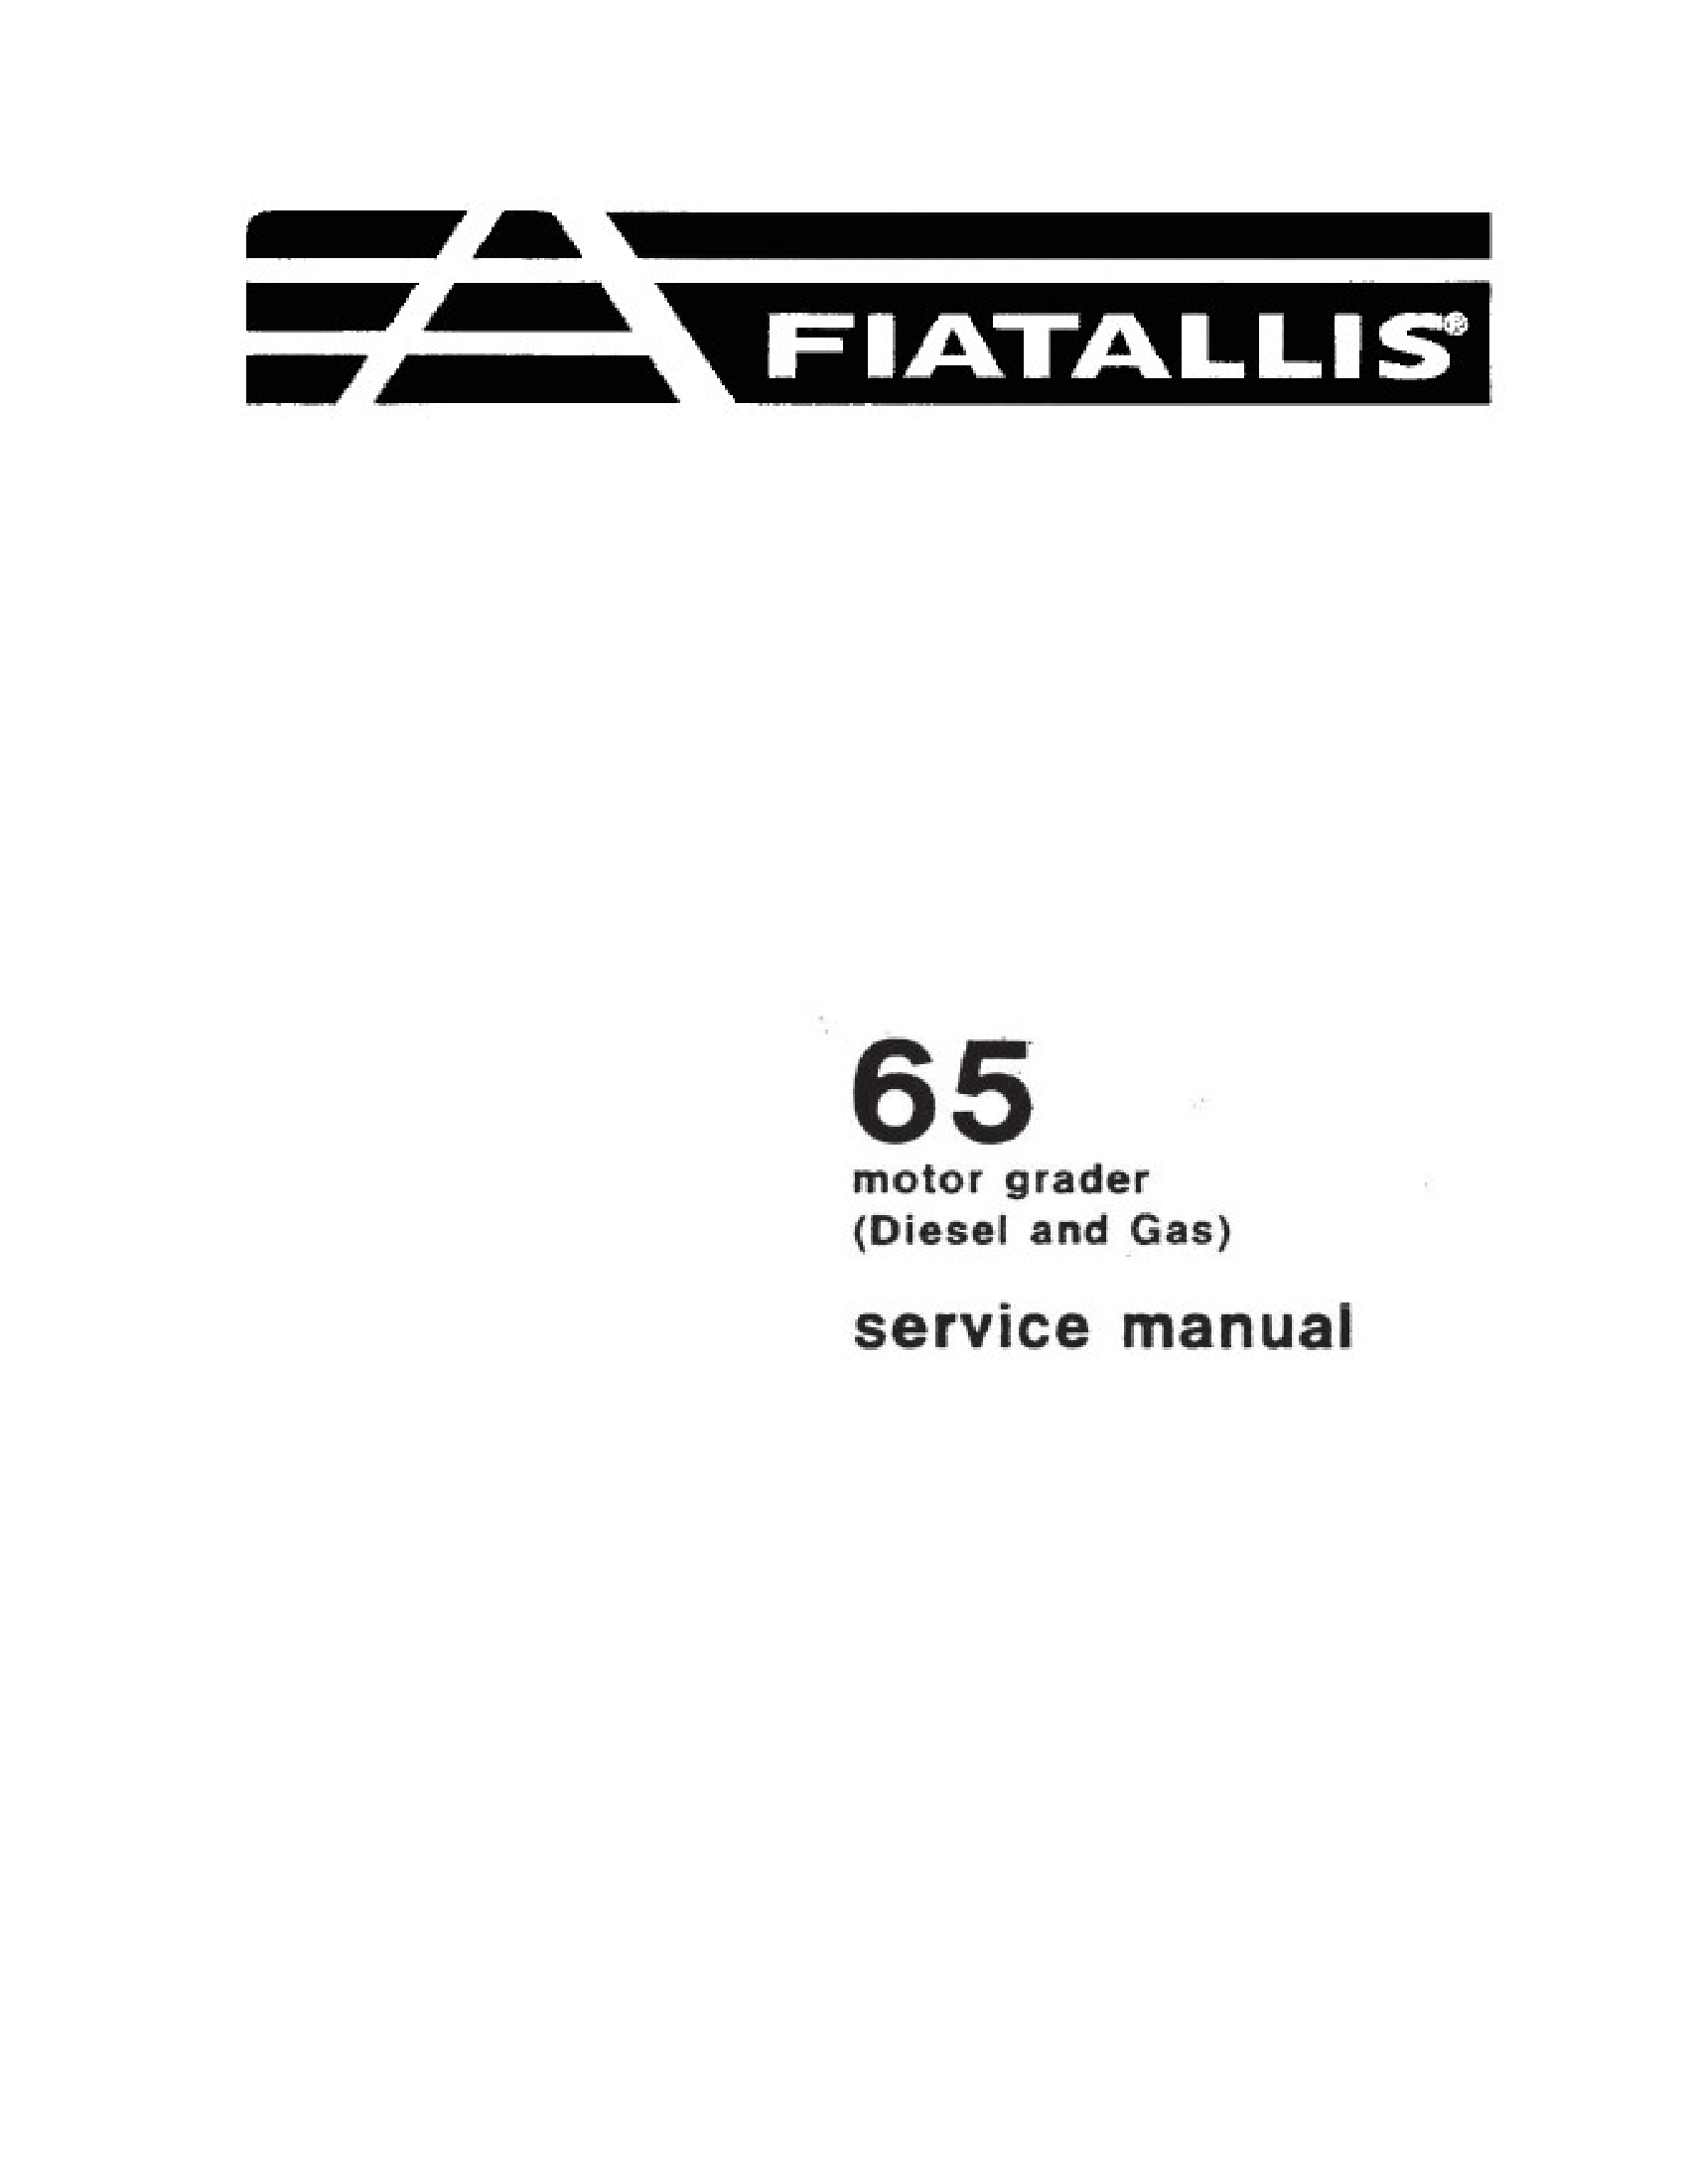 Fiat-Allis 65 Motor Grader manual